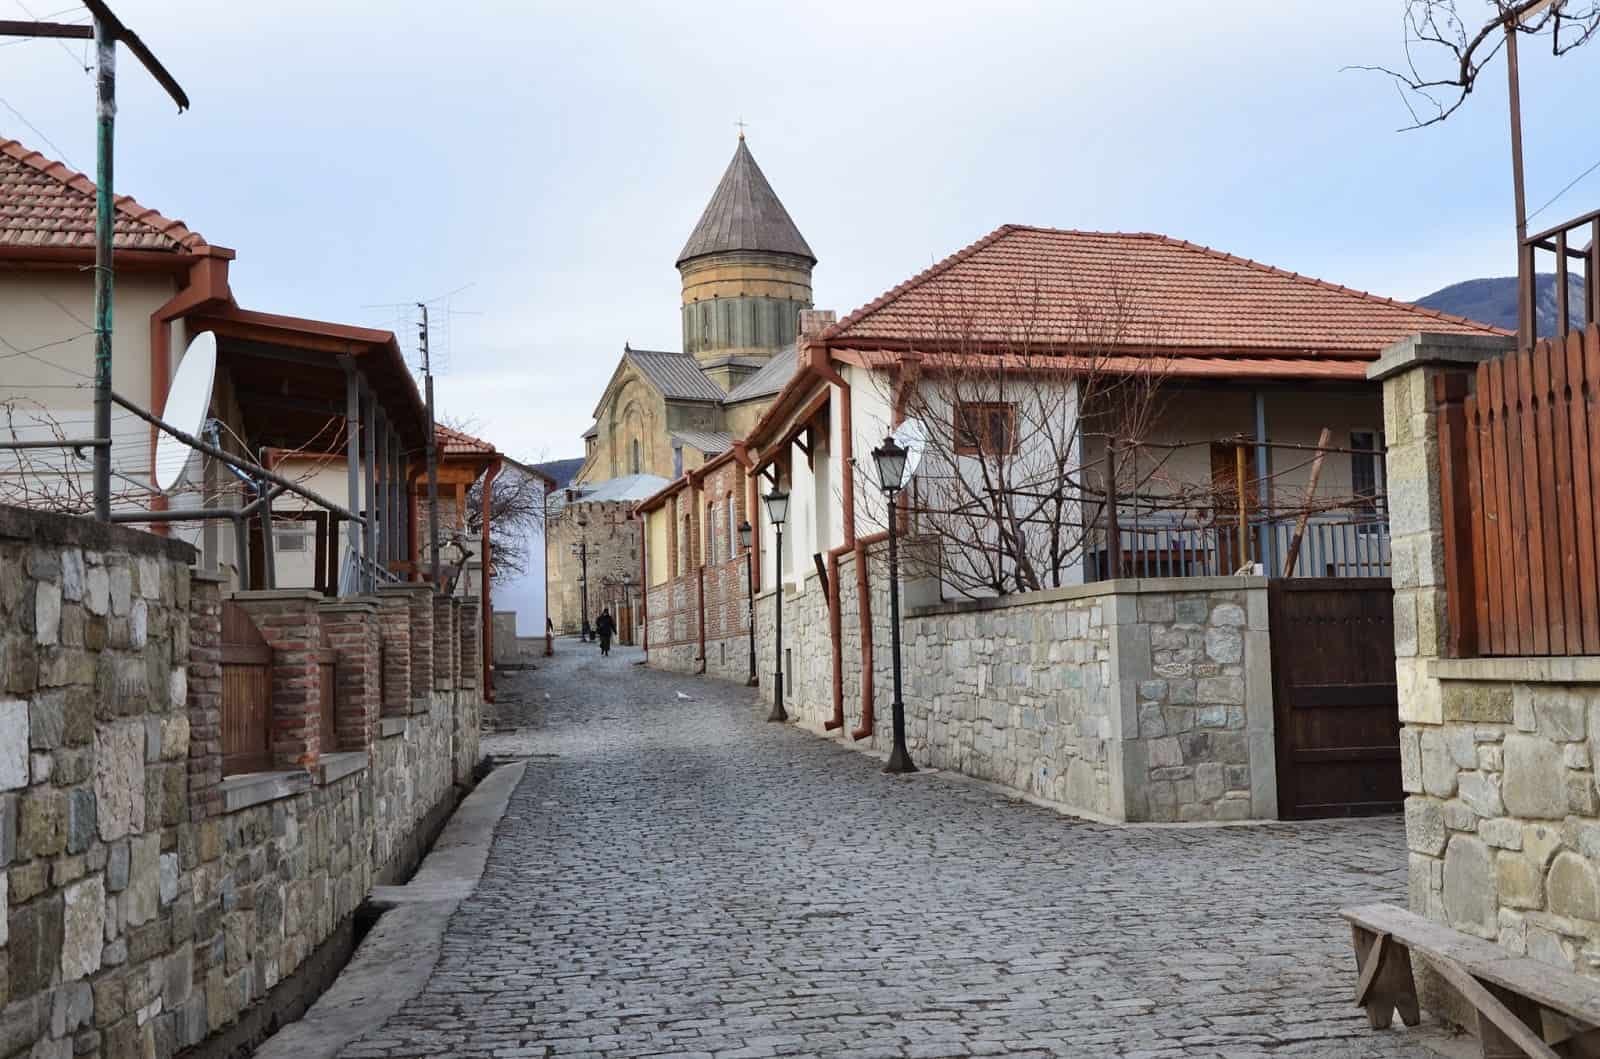 Old town in Mtskheta, Georgia